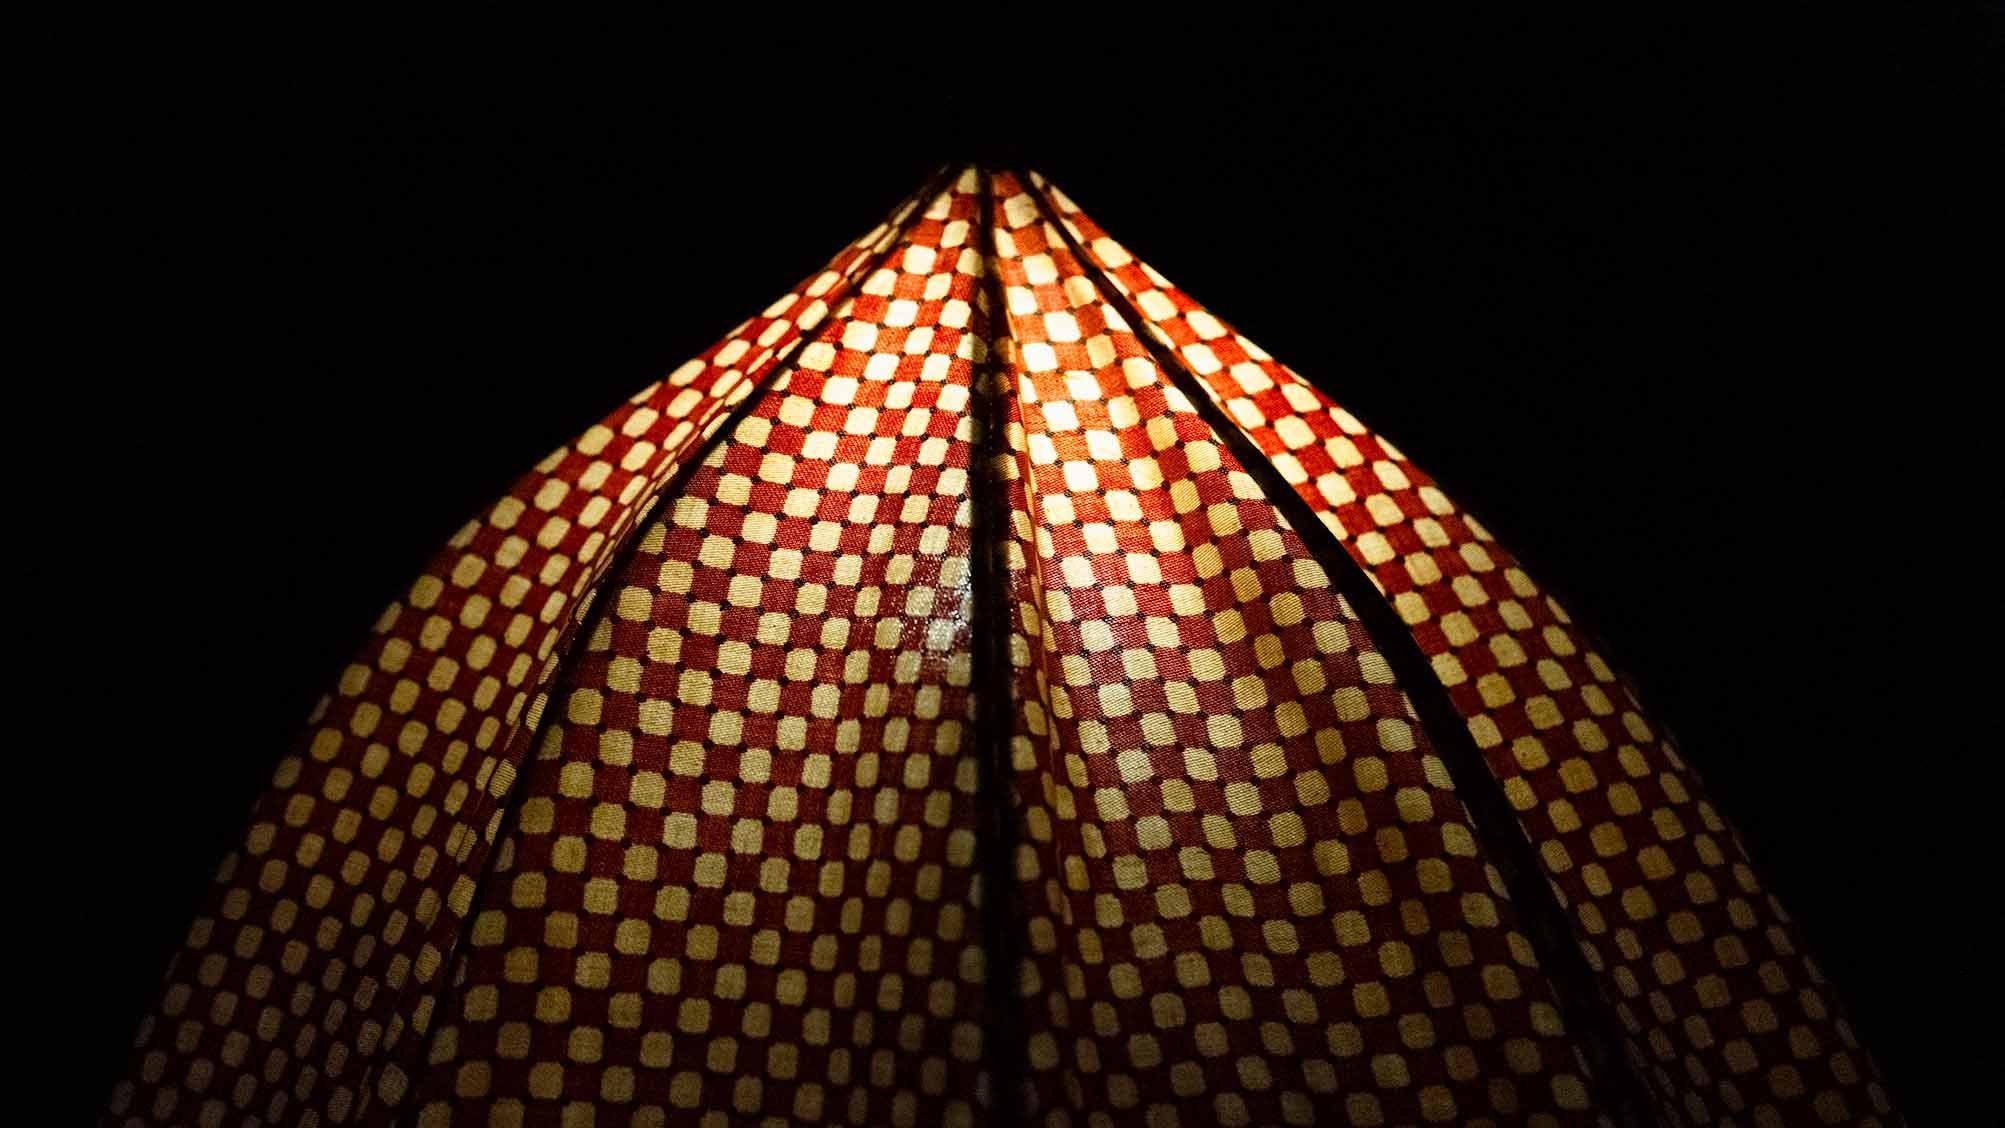 SCHIRM STEHLEUCHTE
GEORGE KOVACS C.1975

Seltene George Kovacs Schirm-Stehlampe mit orange-gelb gemustertem Schirm. Ungewöhnliches Design, das wie ein normaler Regenschirm geöffnet und geschlossen werden kann. Interaktive und skulpturale Lampe aus